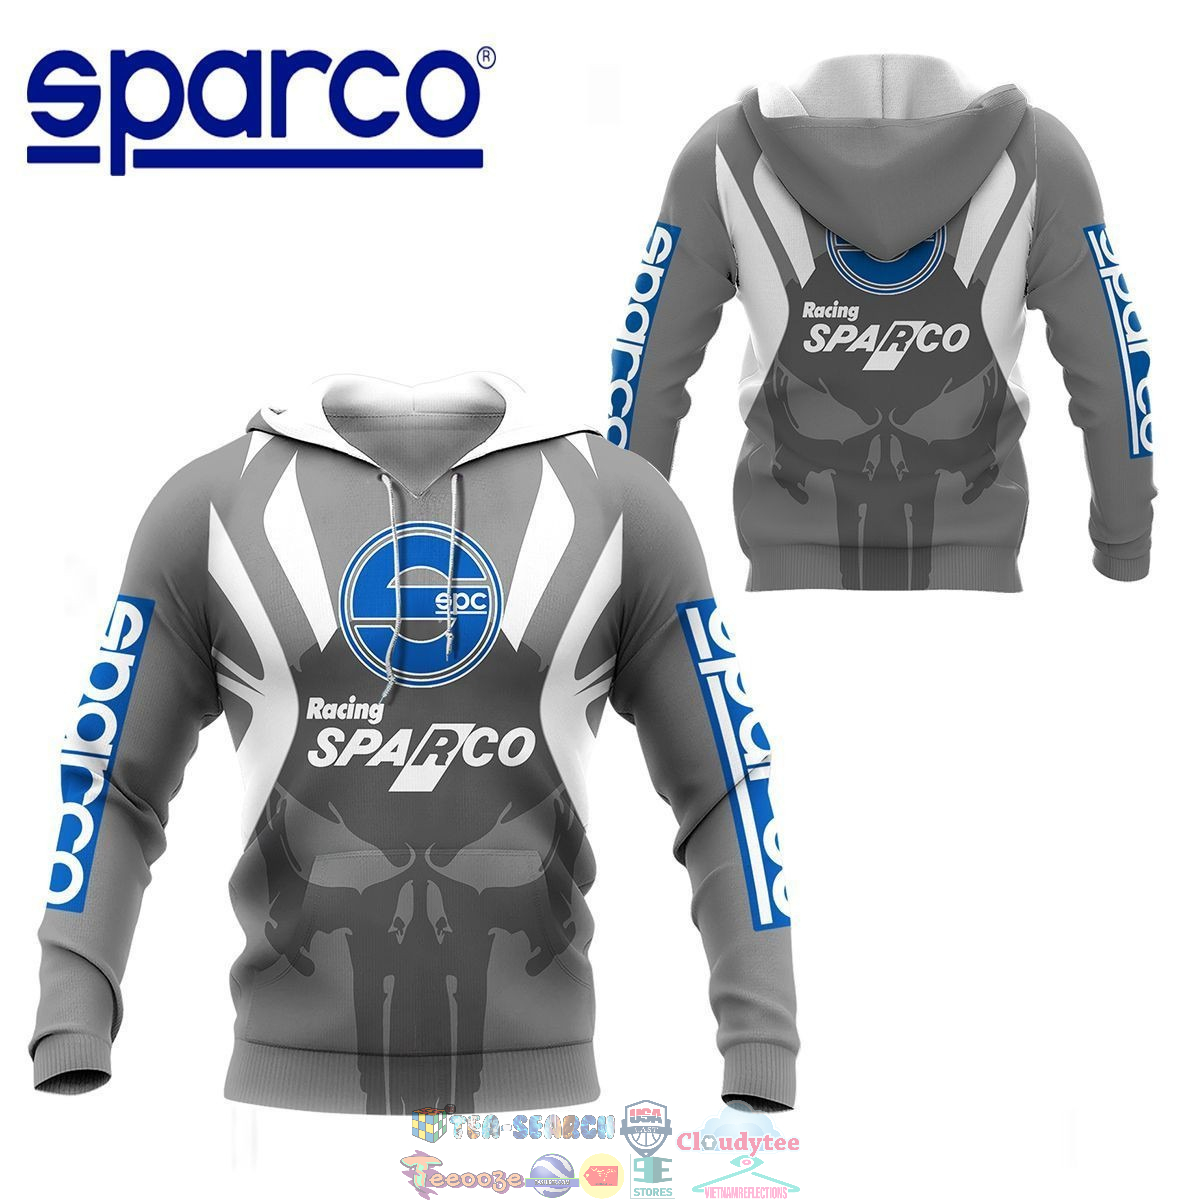 XpF1I42v-TH060822-60xxxSparco-ver-5-3D-hoodie-and-t-shirt3.jpg